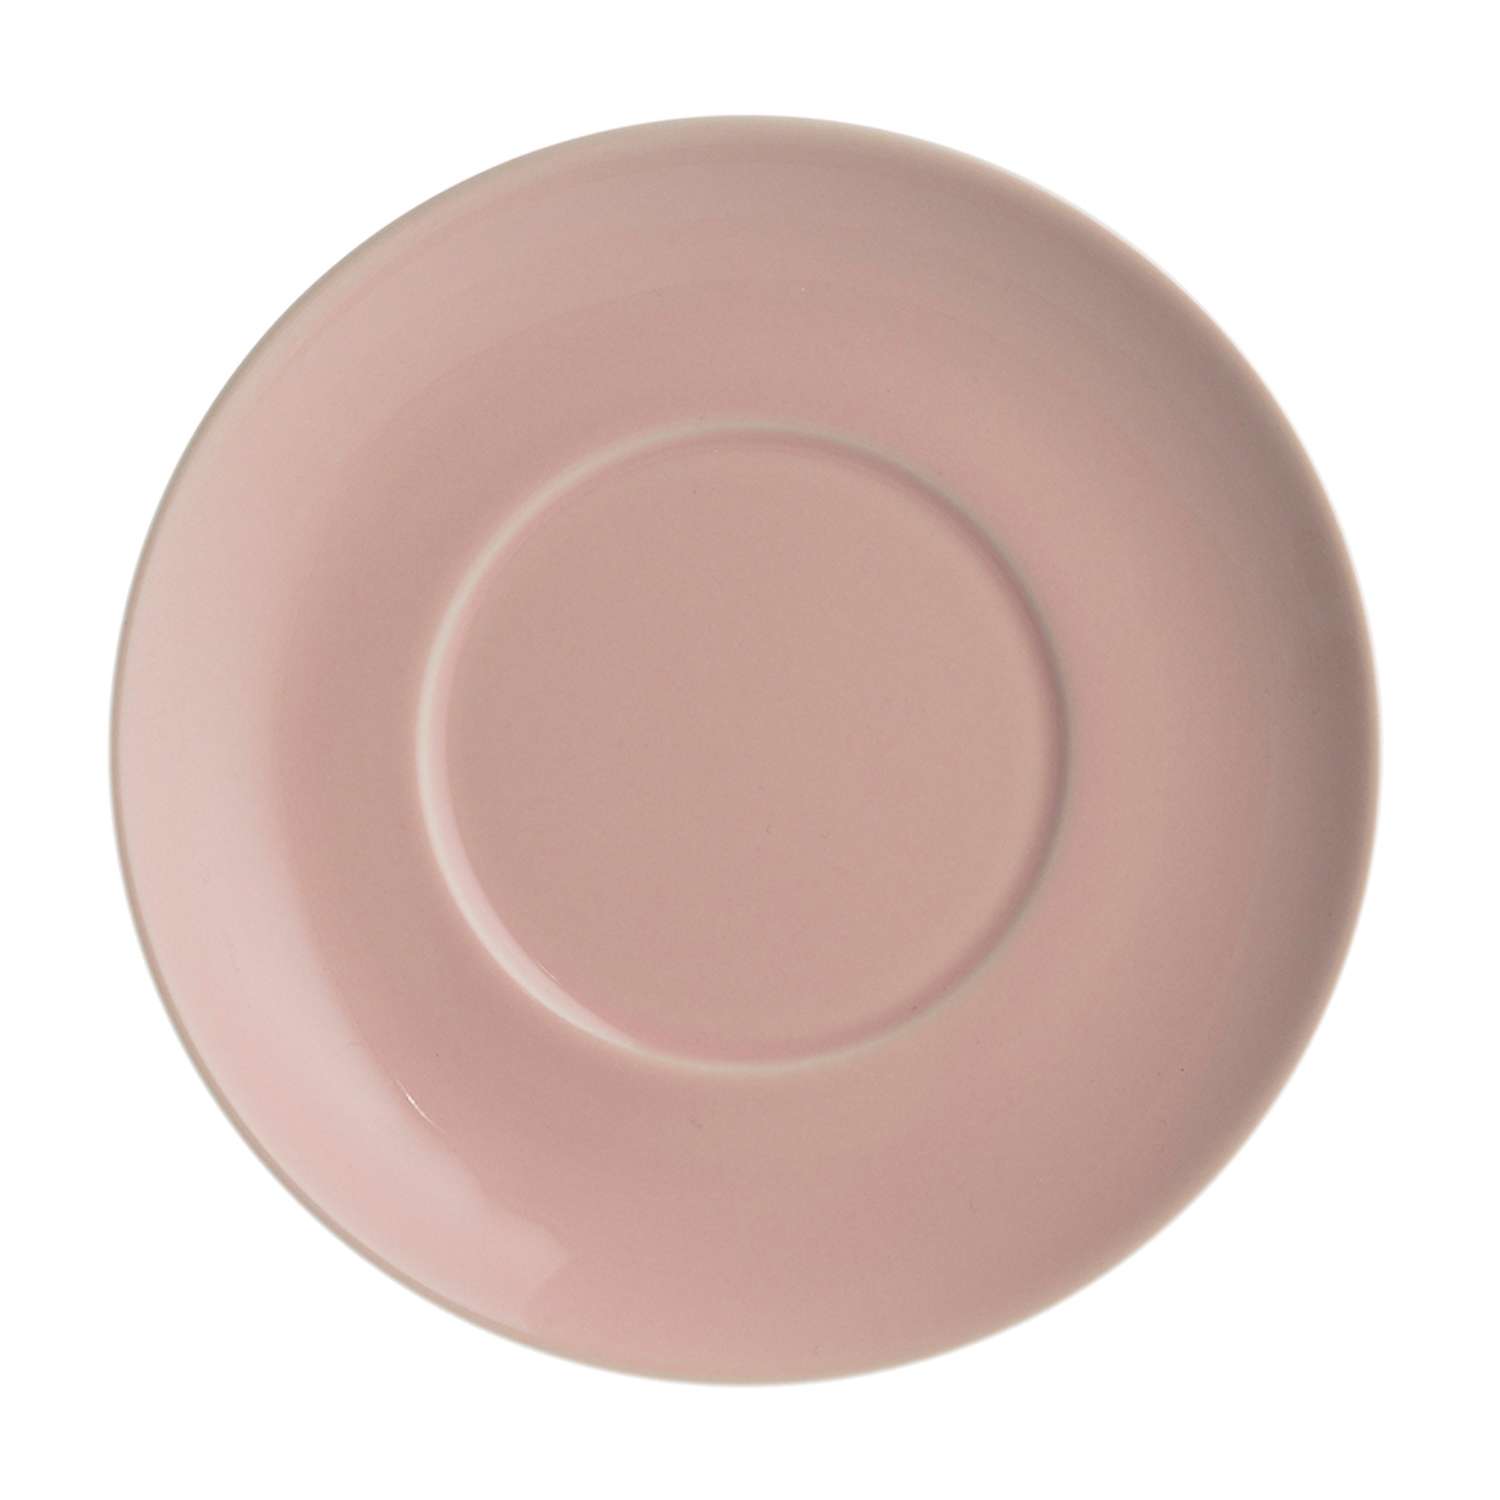 Блюдце Typhoon Cafe Concept D 14 см розовое - фото 1